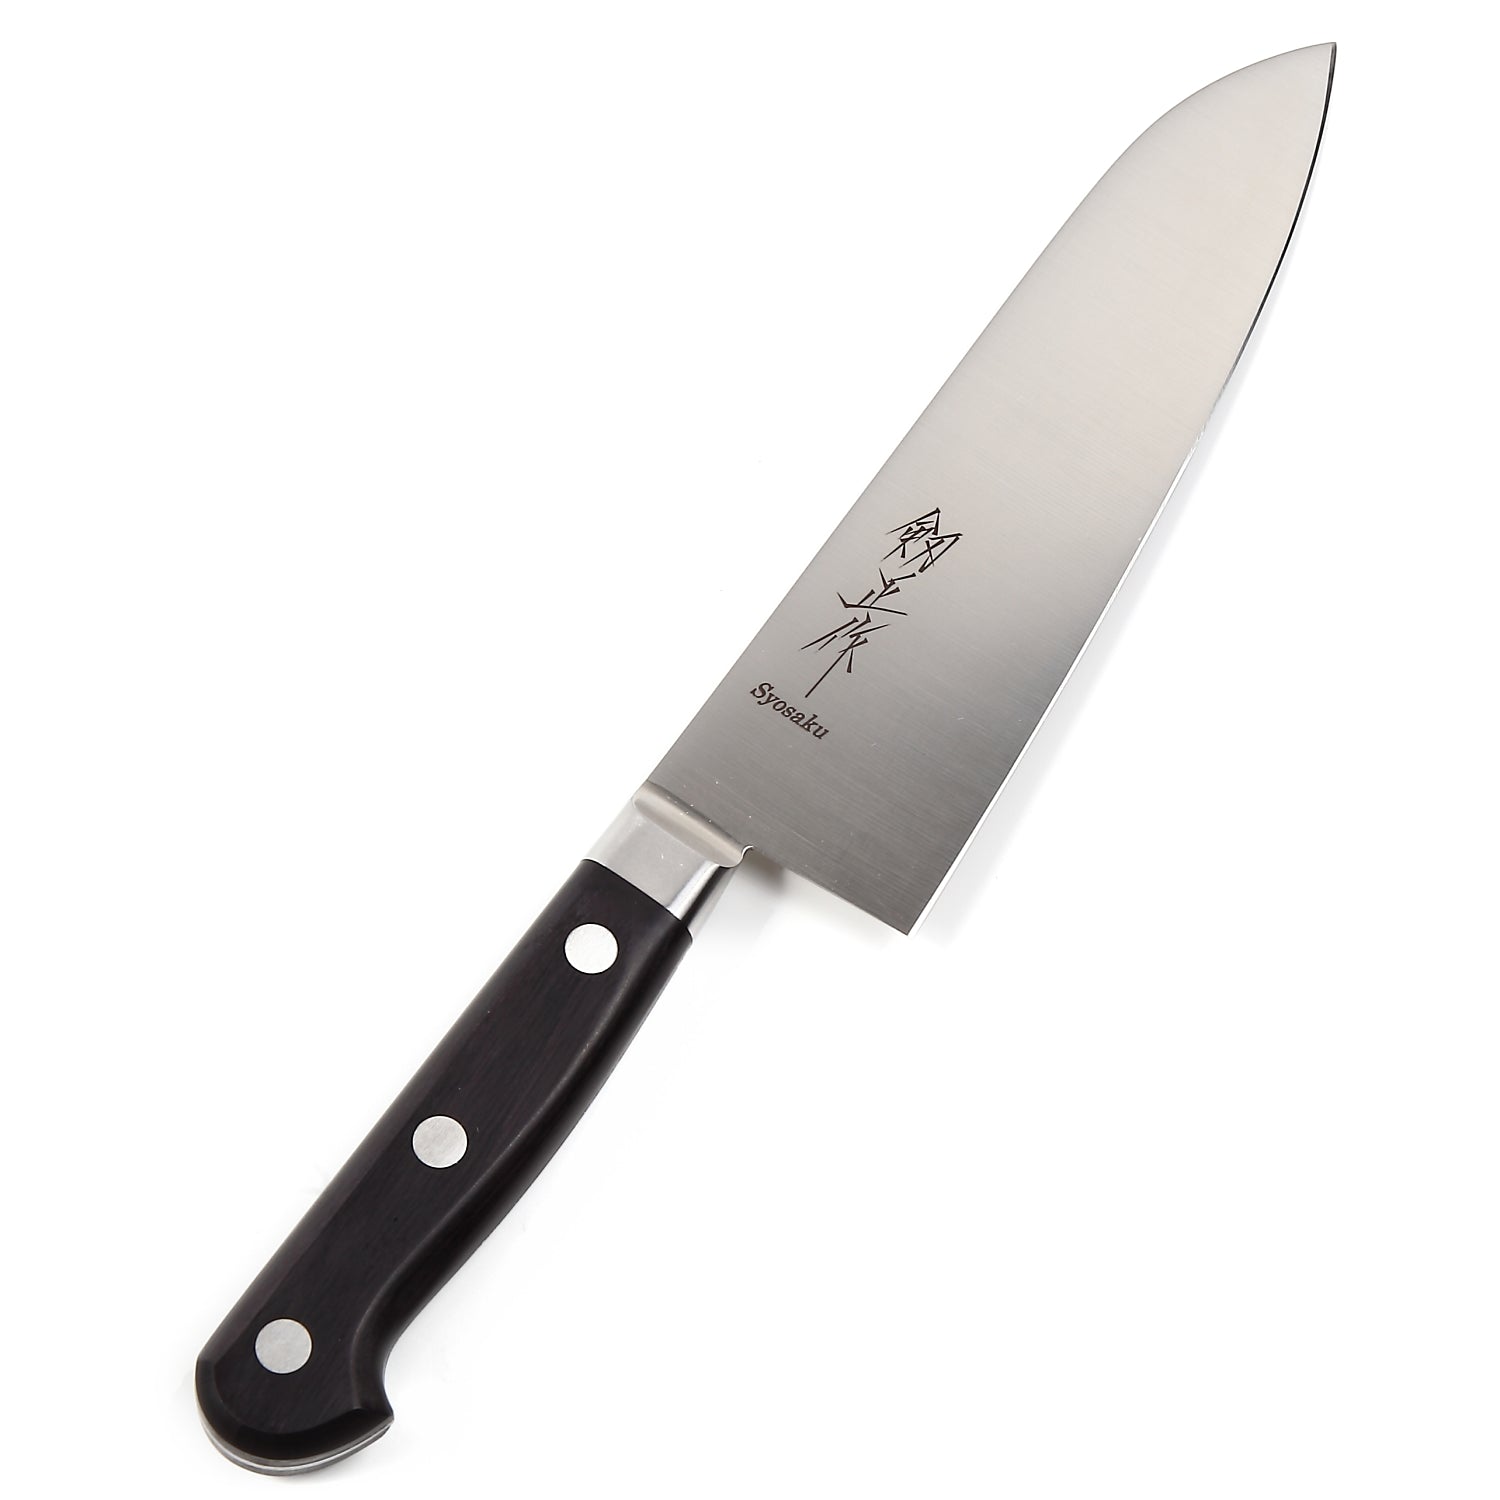 Syosaku Japanese Multi Purpose Best Sharp Kitchen Chef Knife INOX AUS-8A Stainless Steel Black Pakkawood Handle, Santoku 7-inch (180mm) - Syosaku-Japan